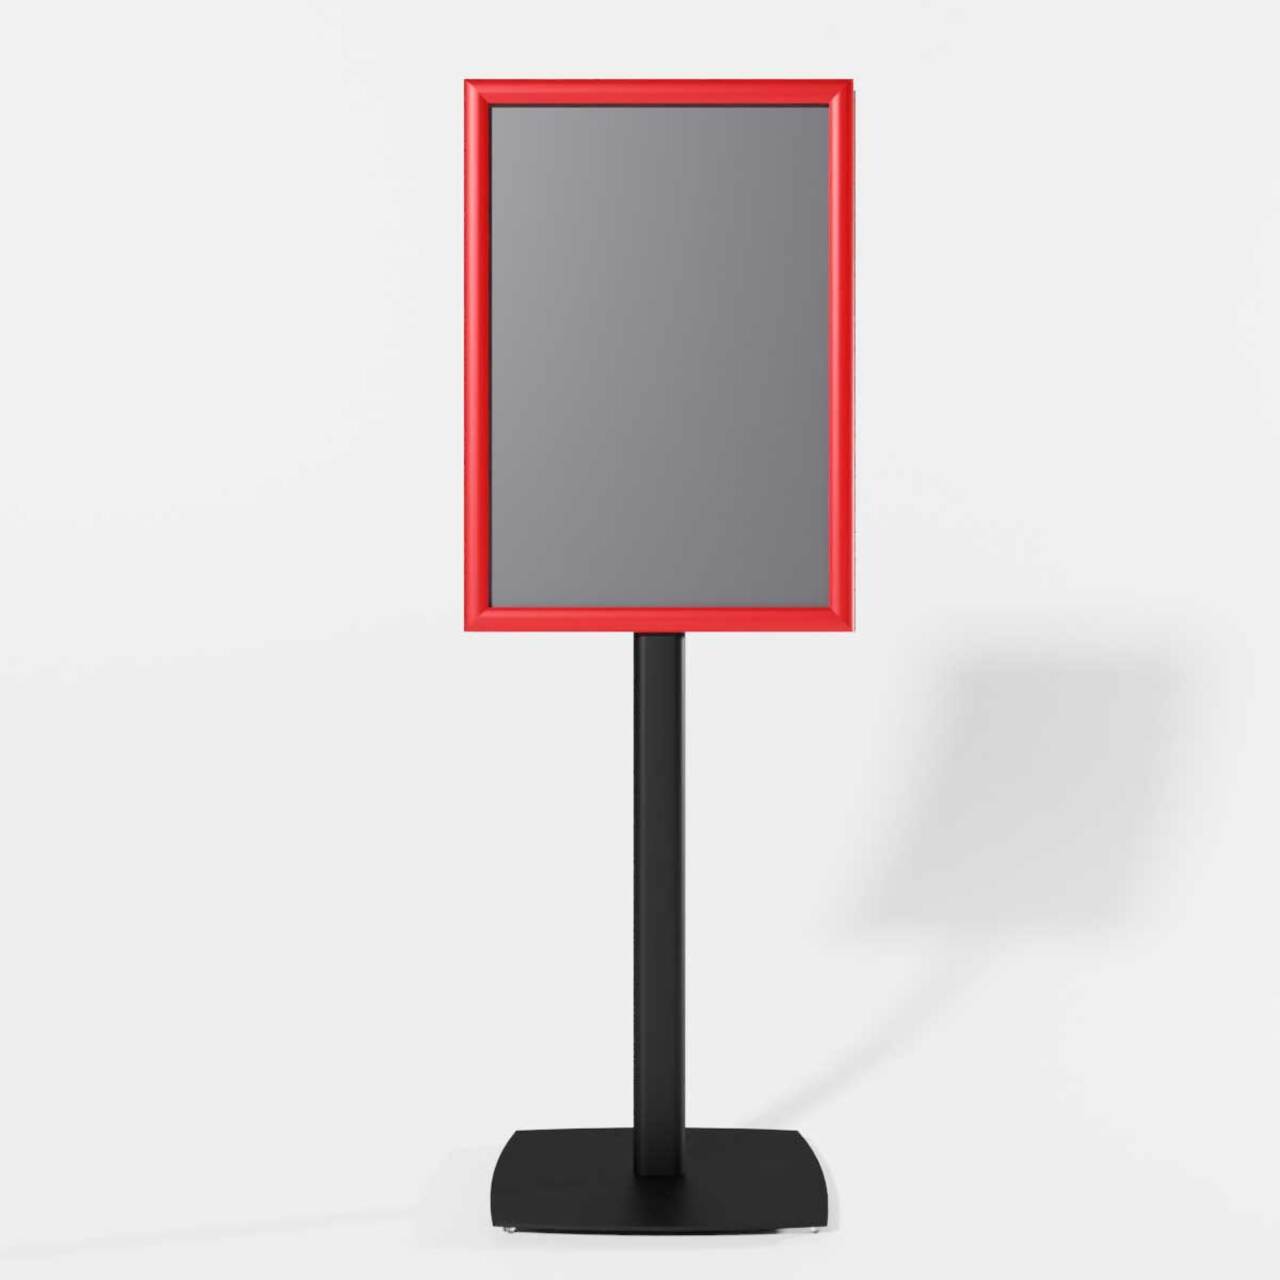 Menuboard RED A3, JJ DISPLAYS, 297 x 420 mm, Portrait, simplă față